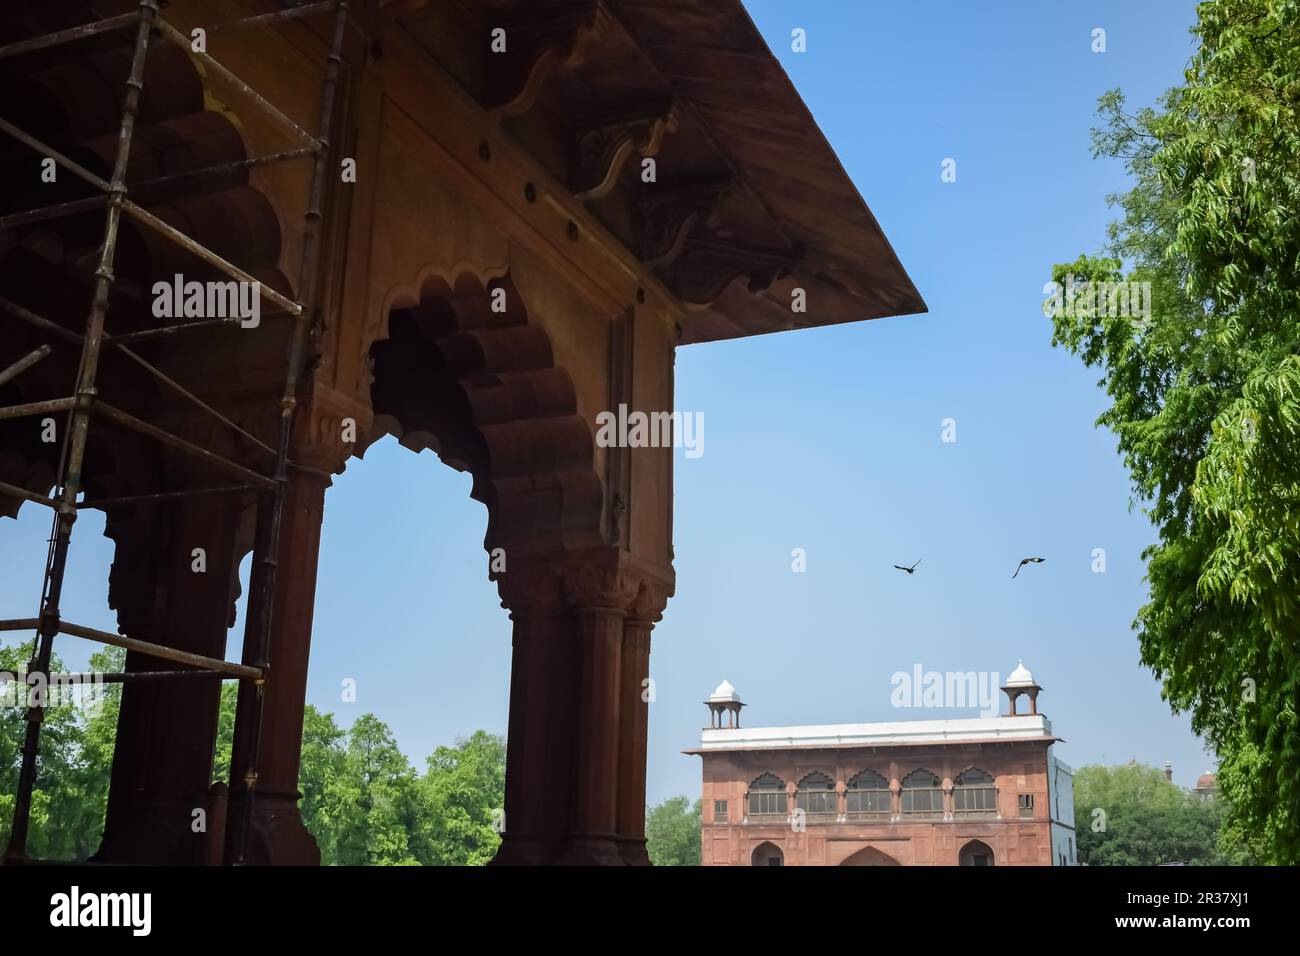 Dettagli architettonici di Lal Qila - Forte Rosso situato nella Vecchia Delhi, India, Visualizza all'interno Delhi Forte Rosso il famoso punto di riferimento indiano Foto Stock